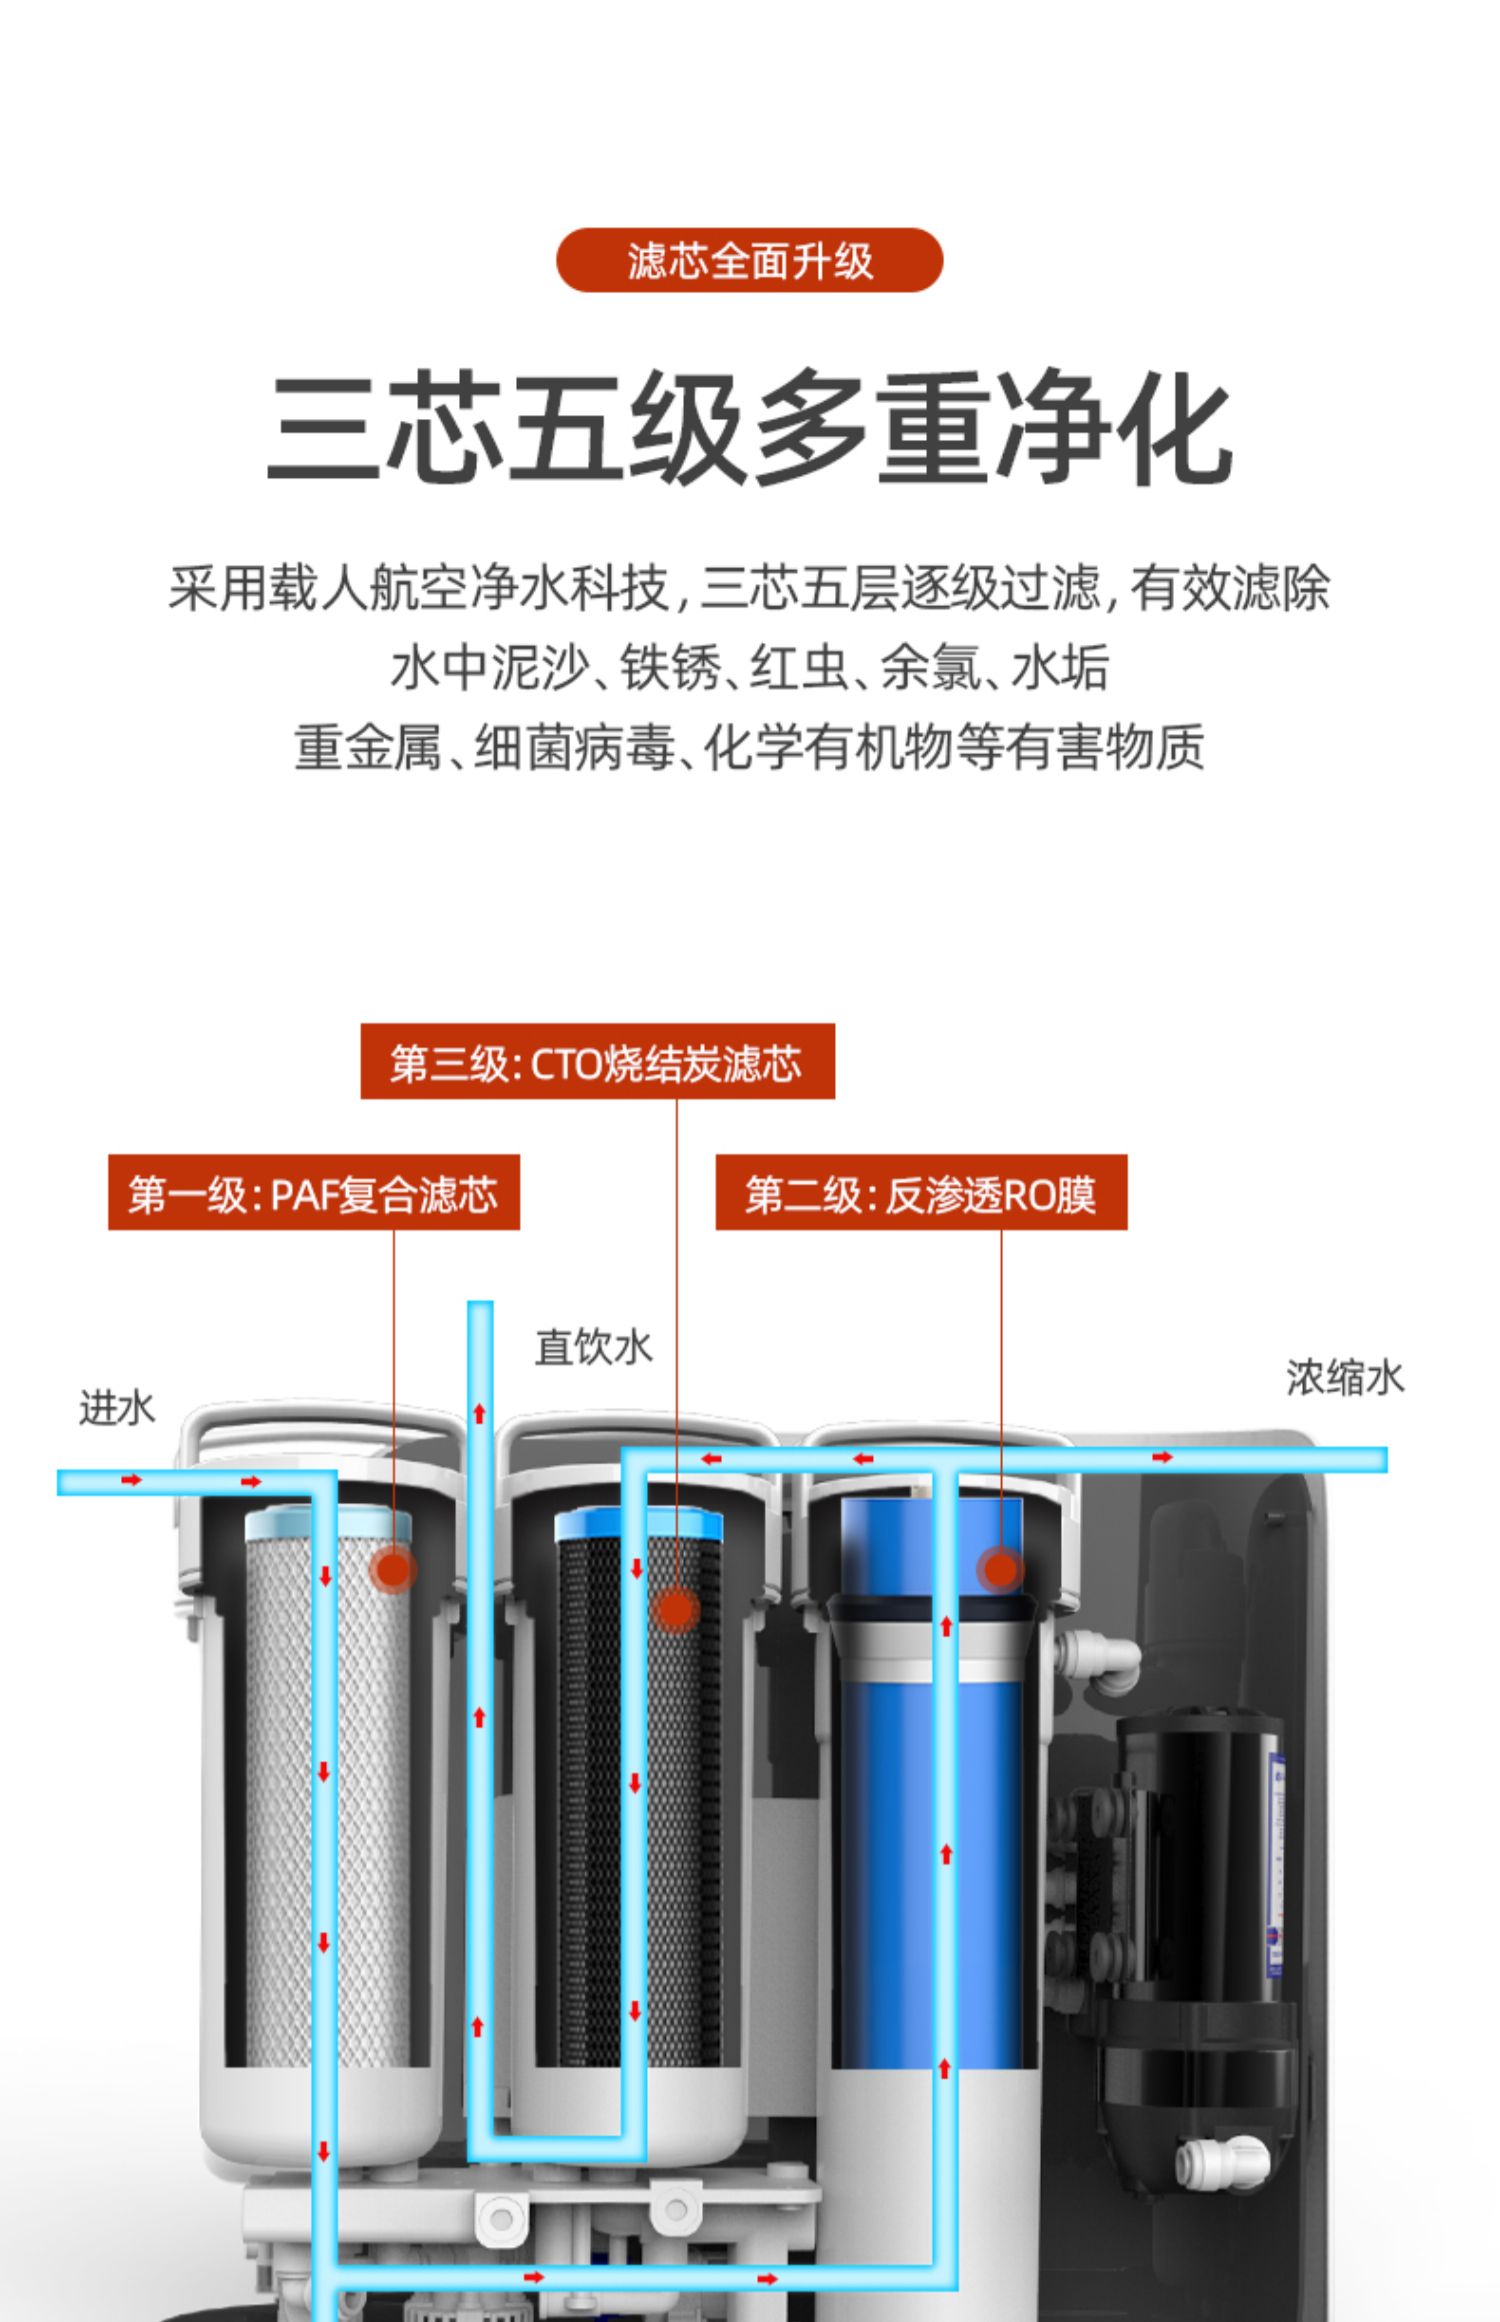 华为商城独家销售广东一米净水器600X1，引领行业迈向新高度！